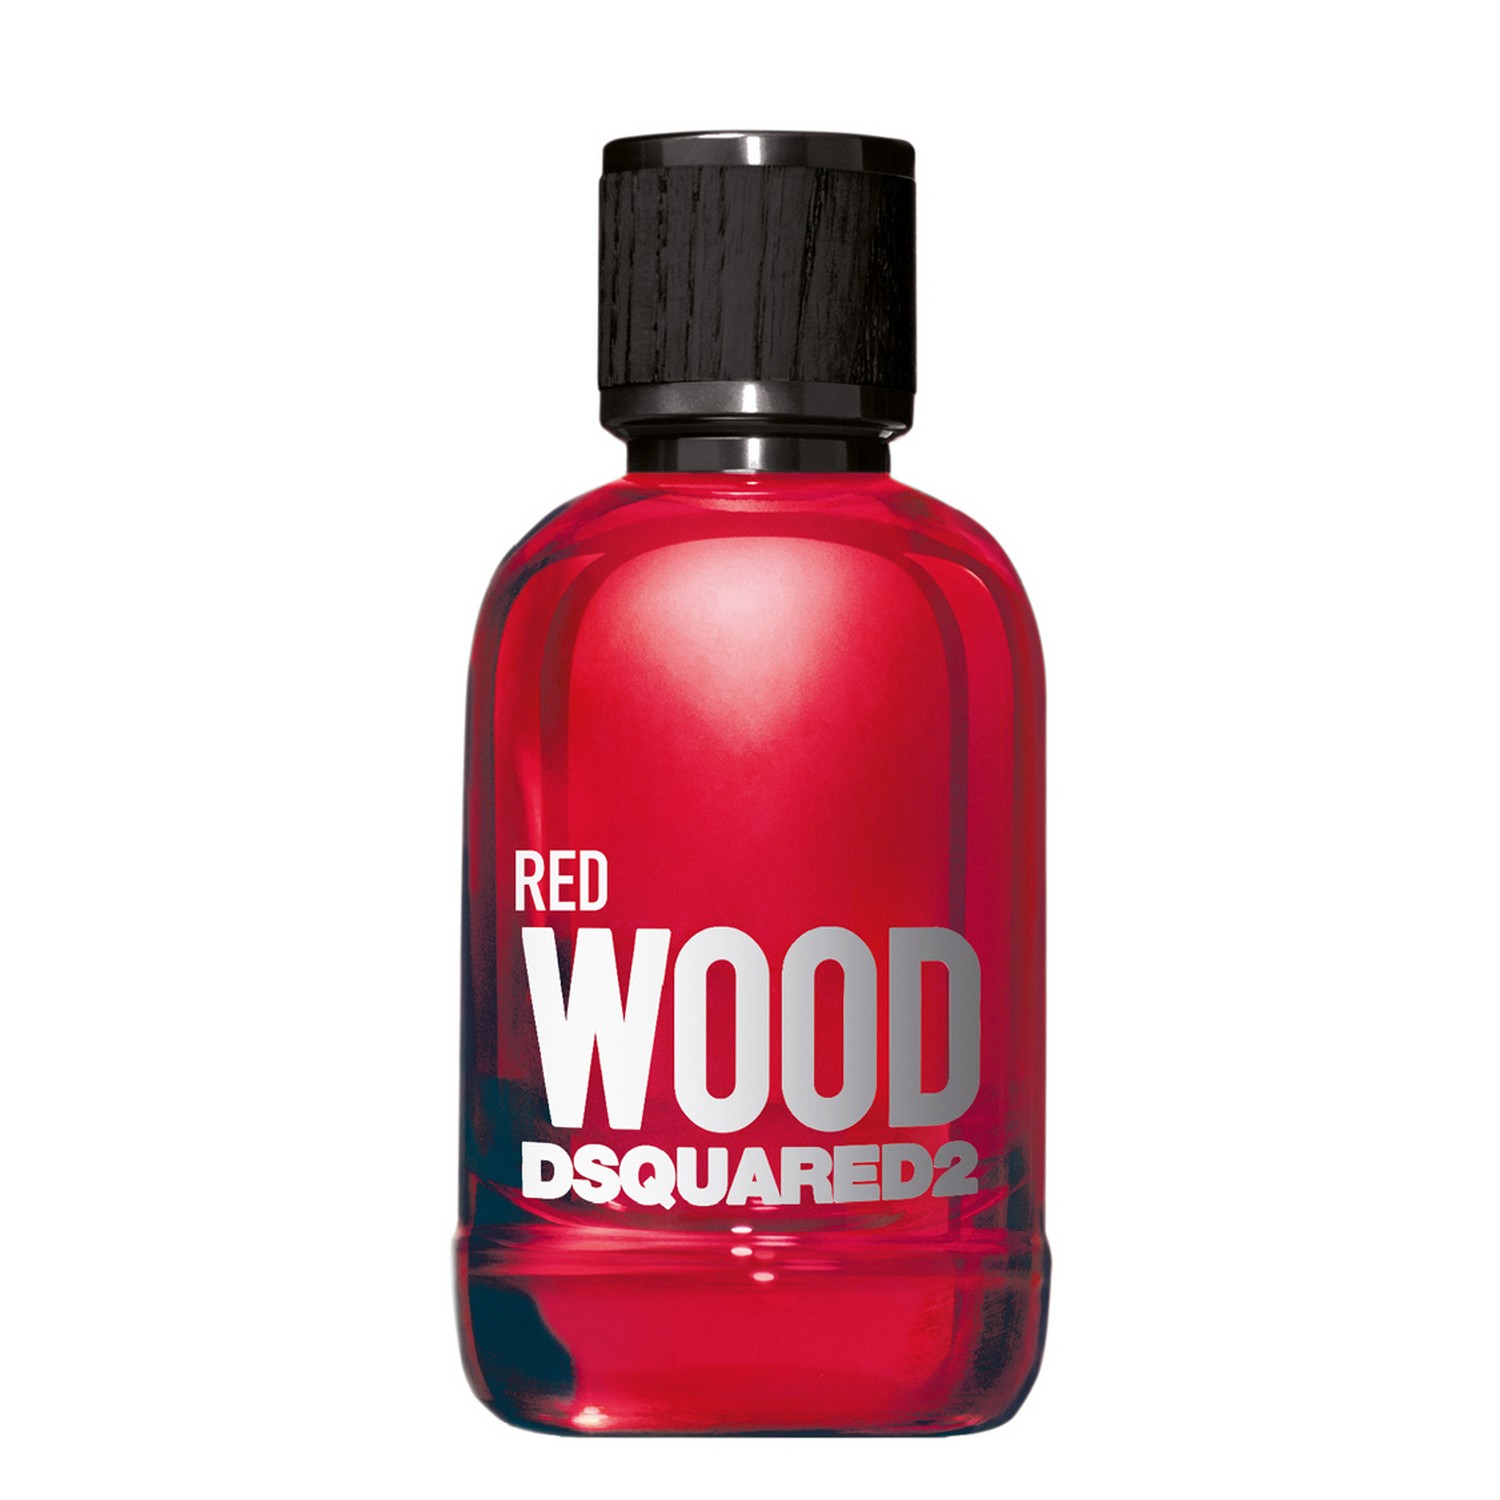 Dsquared² Red Wood Eau de Toilette 100ml